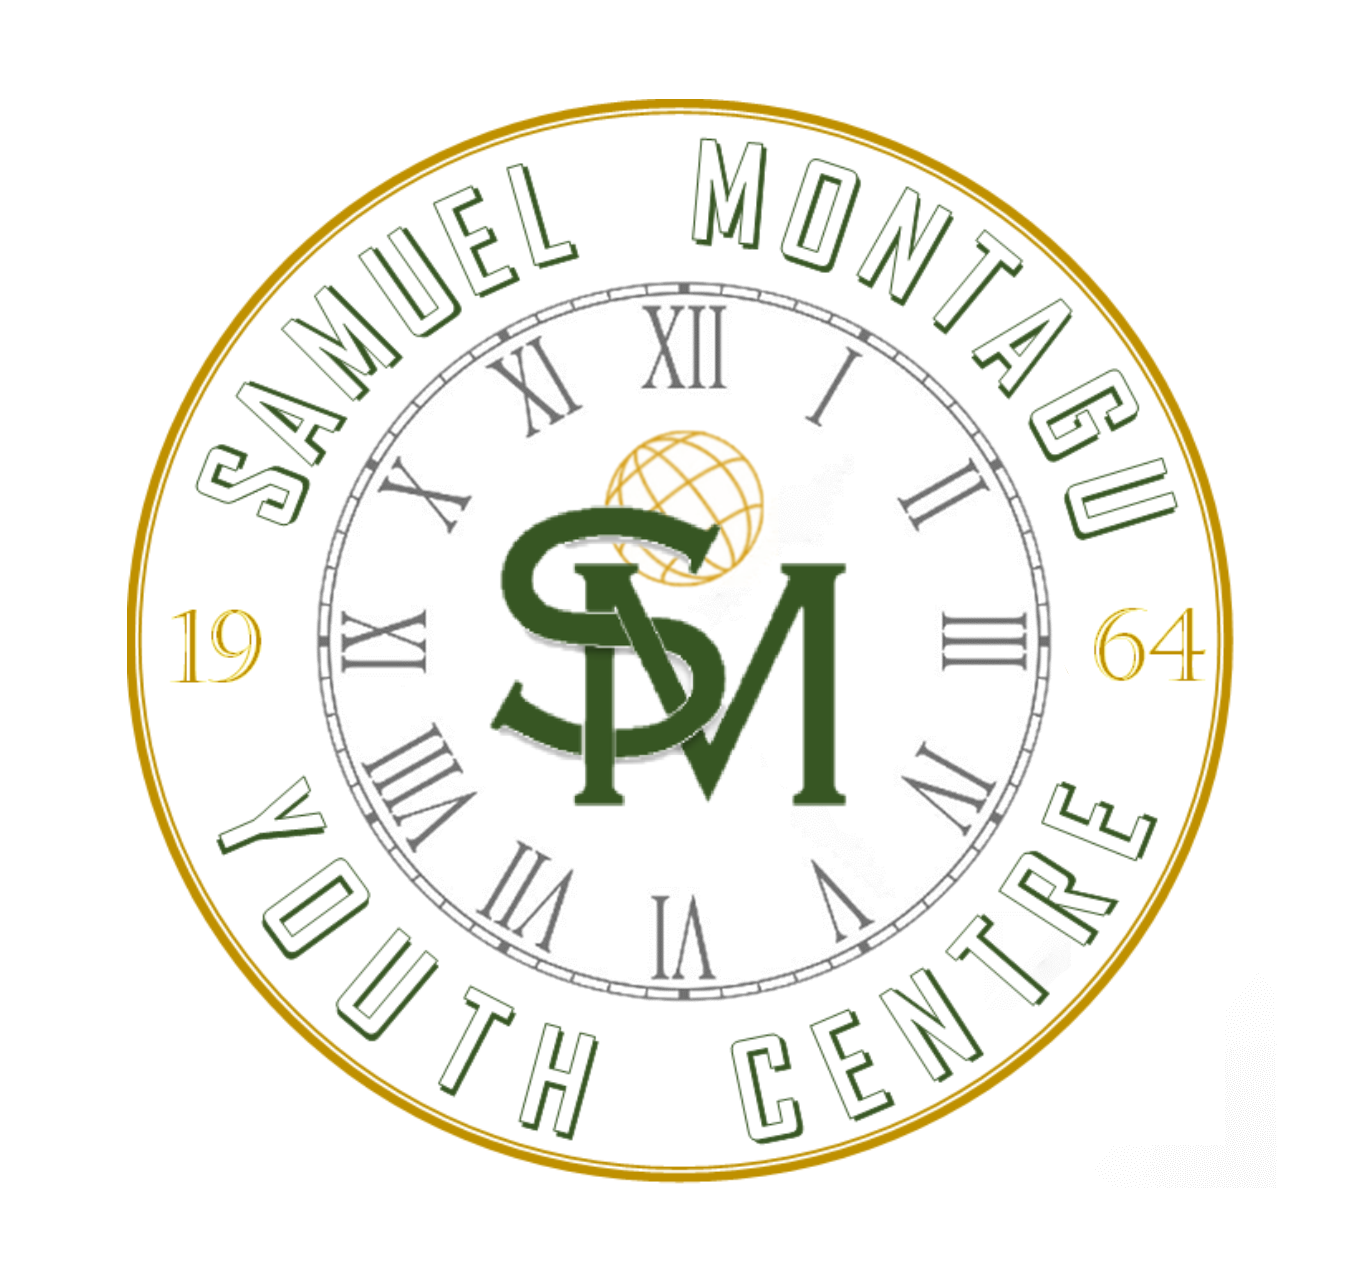 logo for SAMUEL MONTAGU YOUTH CENTRE